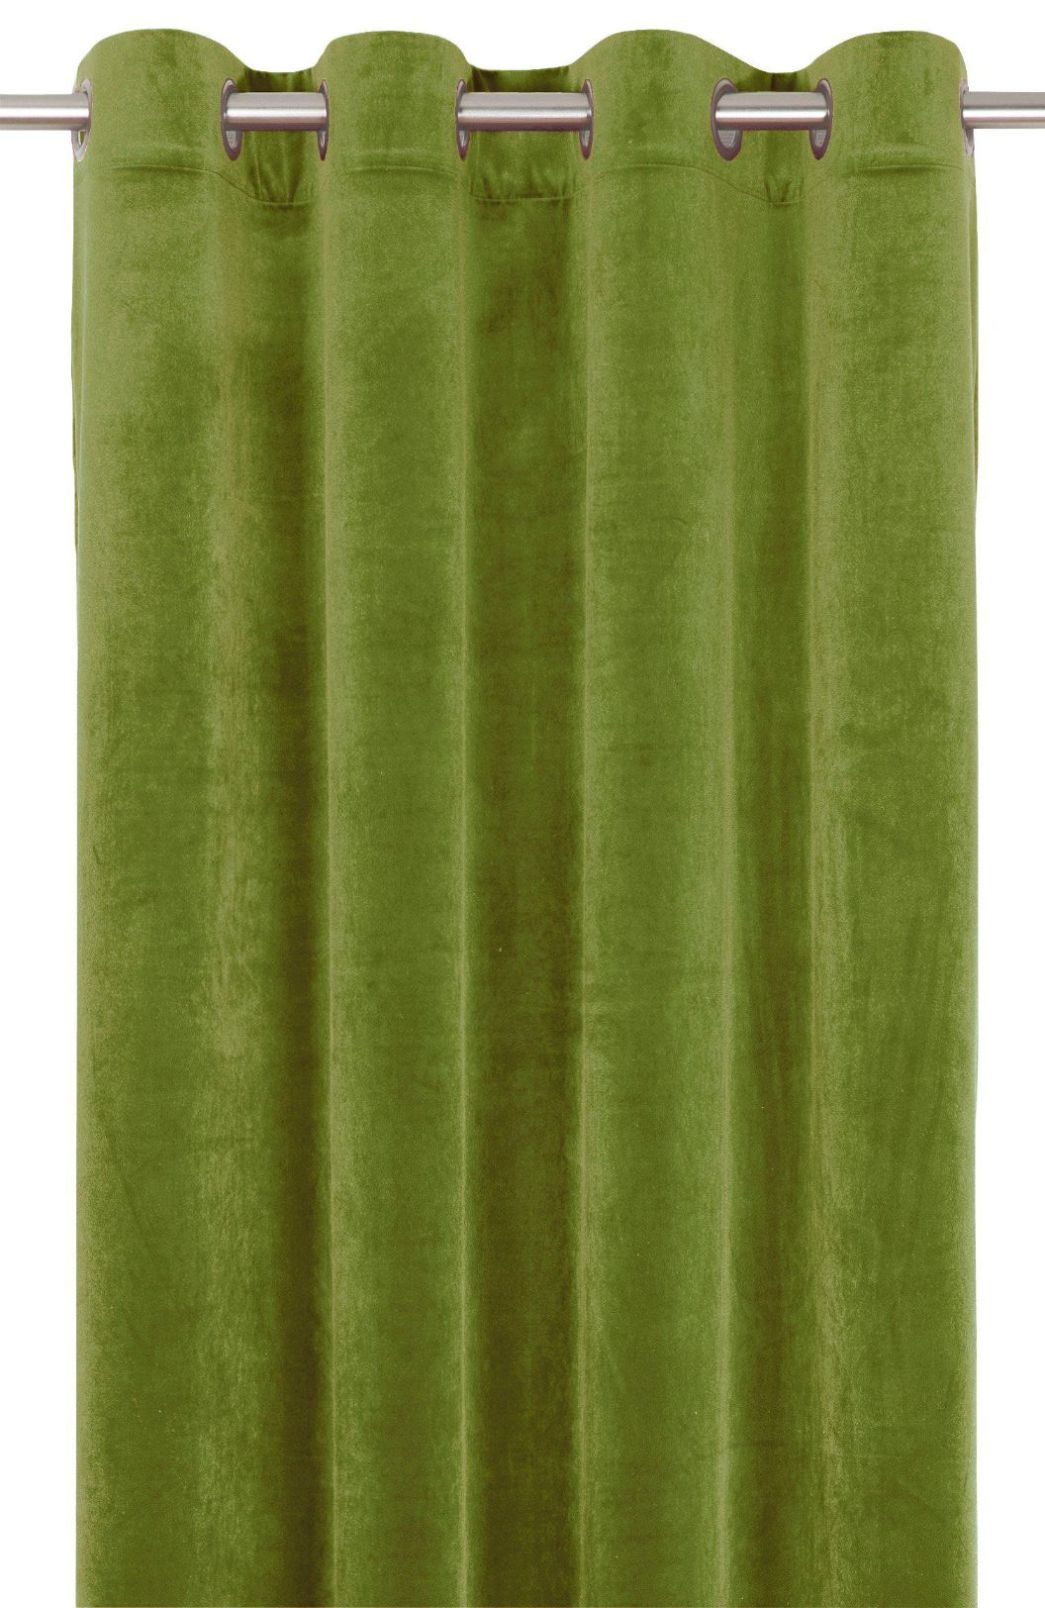 Elise ett grönt gardinset i sammet med öljetter från Svanefors.